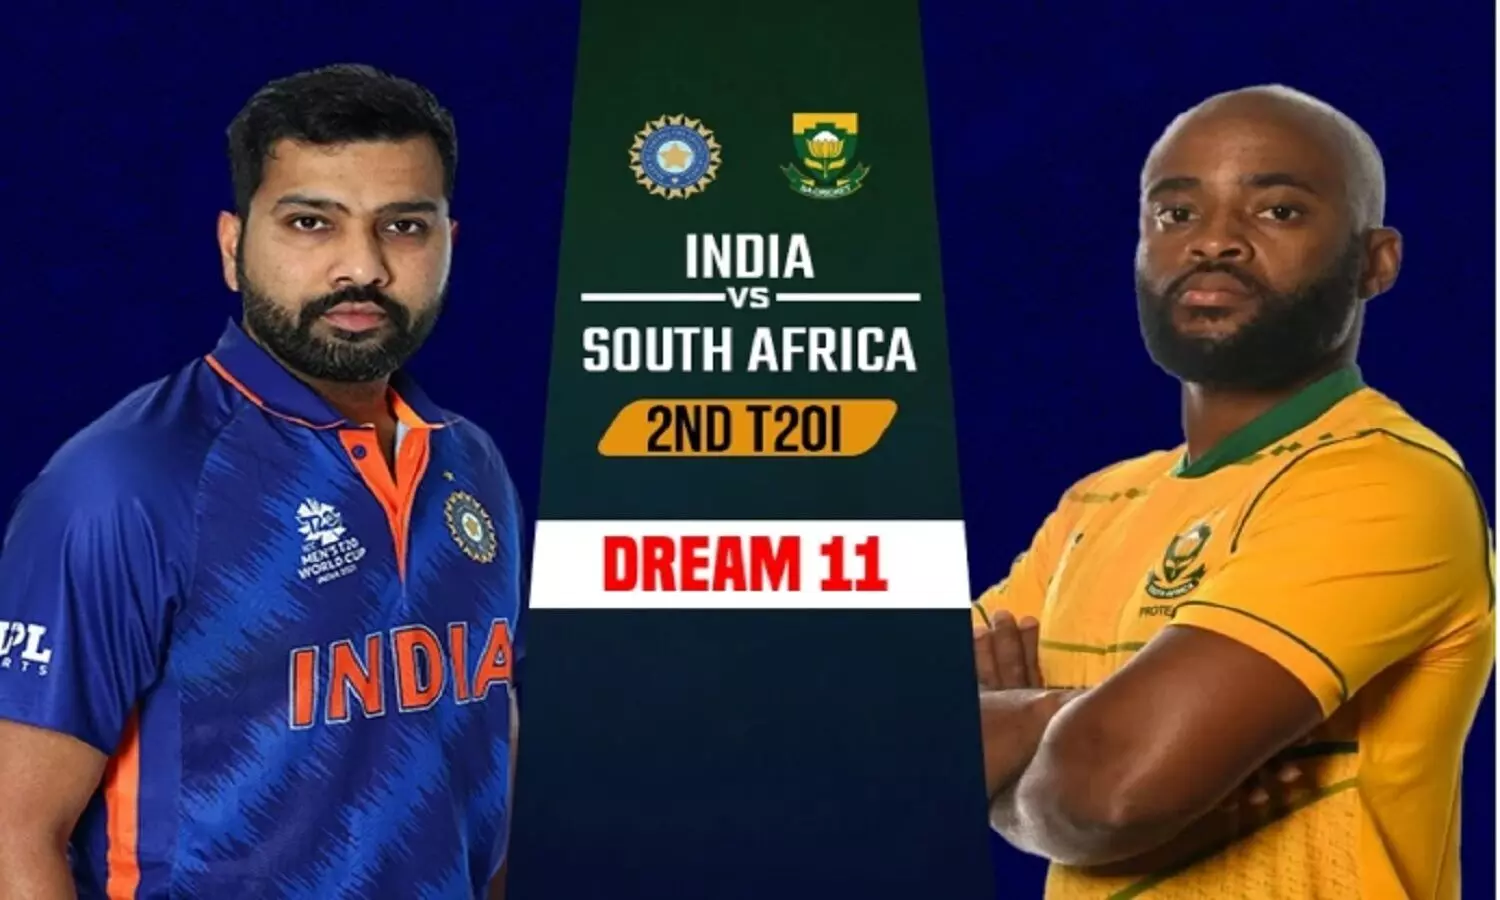 IND Vs SA Todays Playing 11: इंडिया Vs साऊथ अफ्रीका का दूसरा T20 मैच आज, देखें दोनों टीमों की प्लेइंग 11